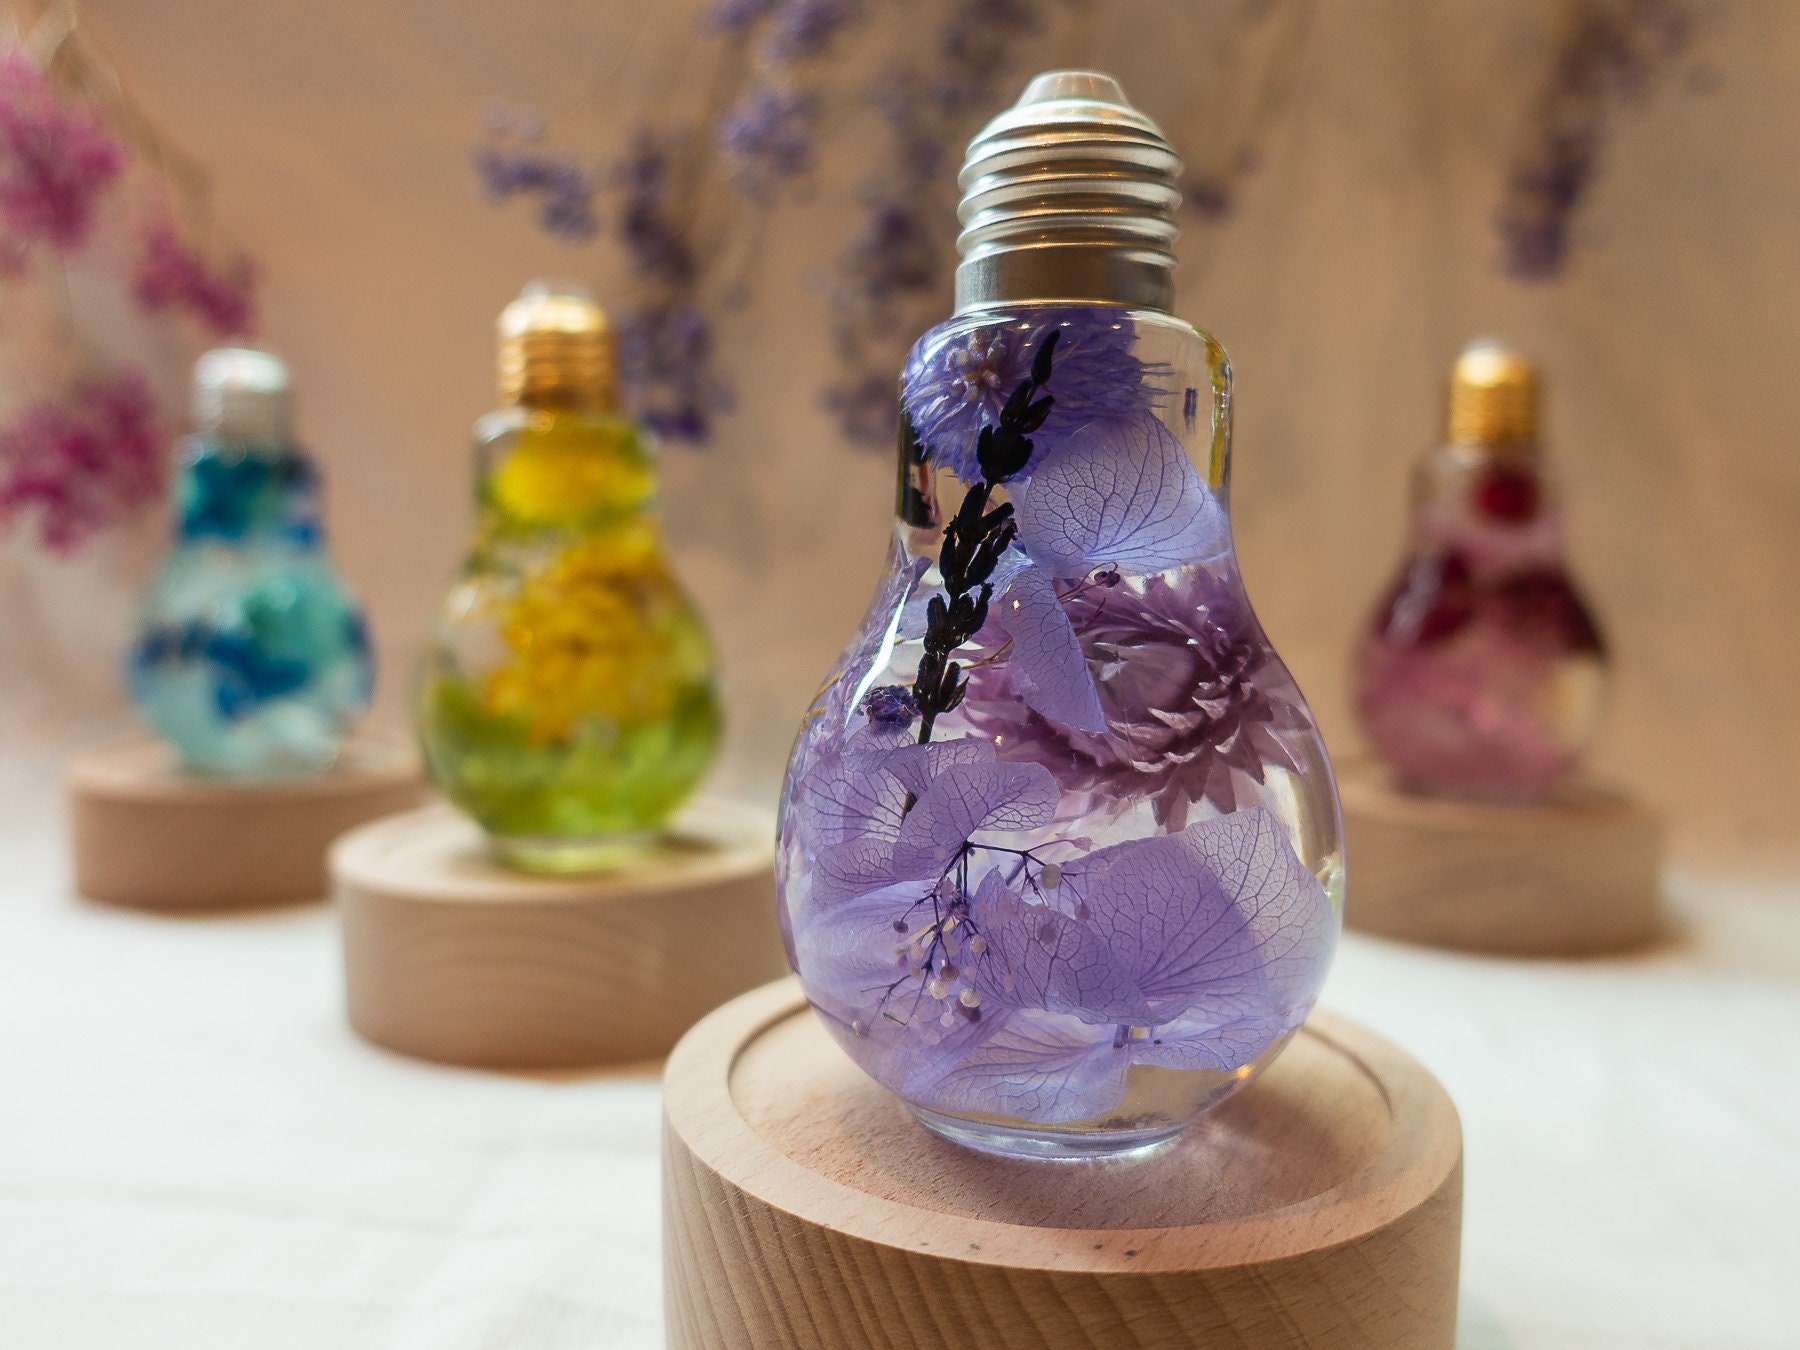 Preserved flower nightlight/real flower lightbulb/home | Etsy